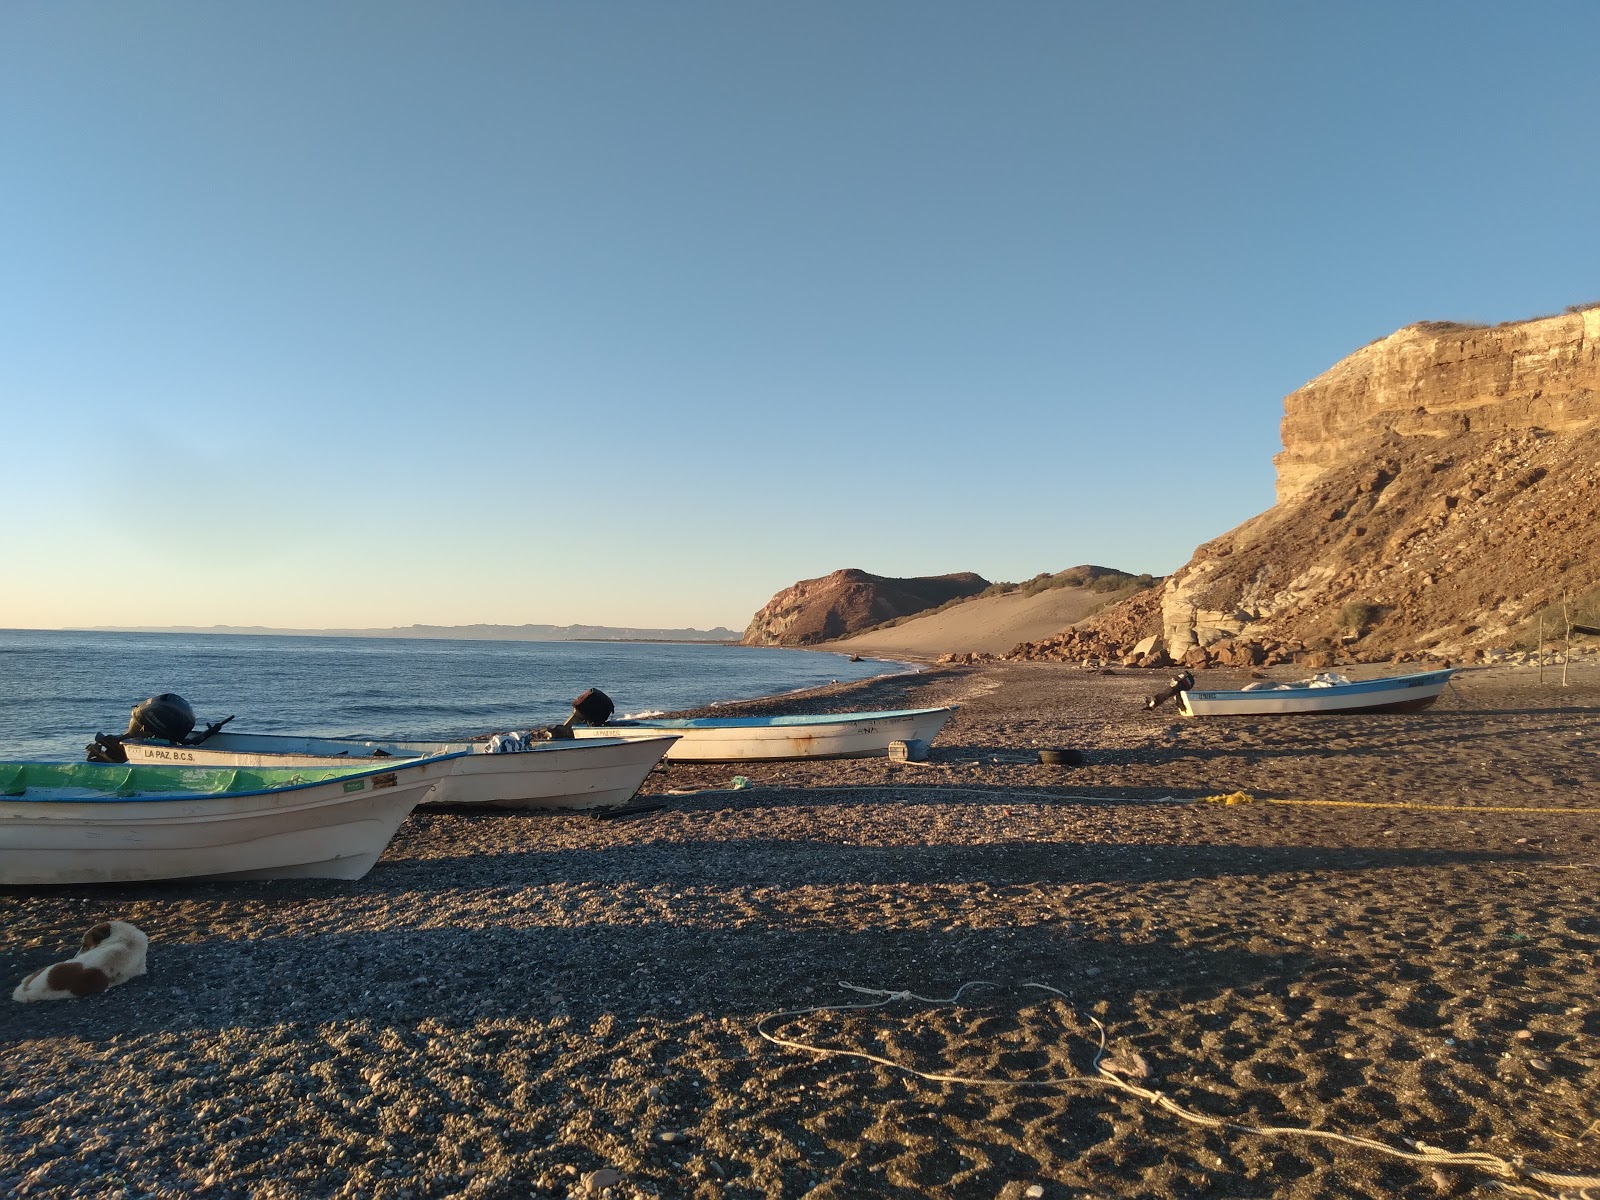 Playa El Portugues'in fotoğrafı gri kum ve çakıl yüzey ile